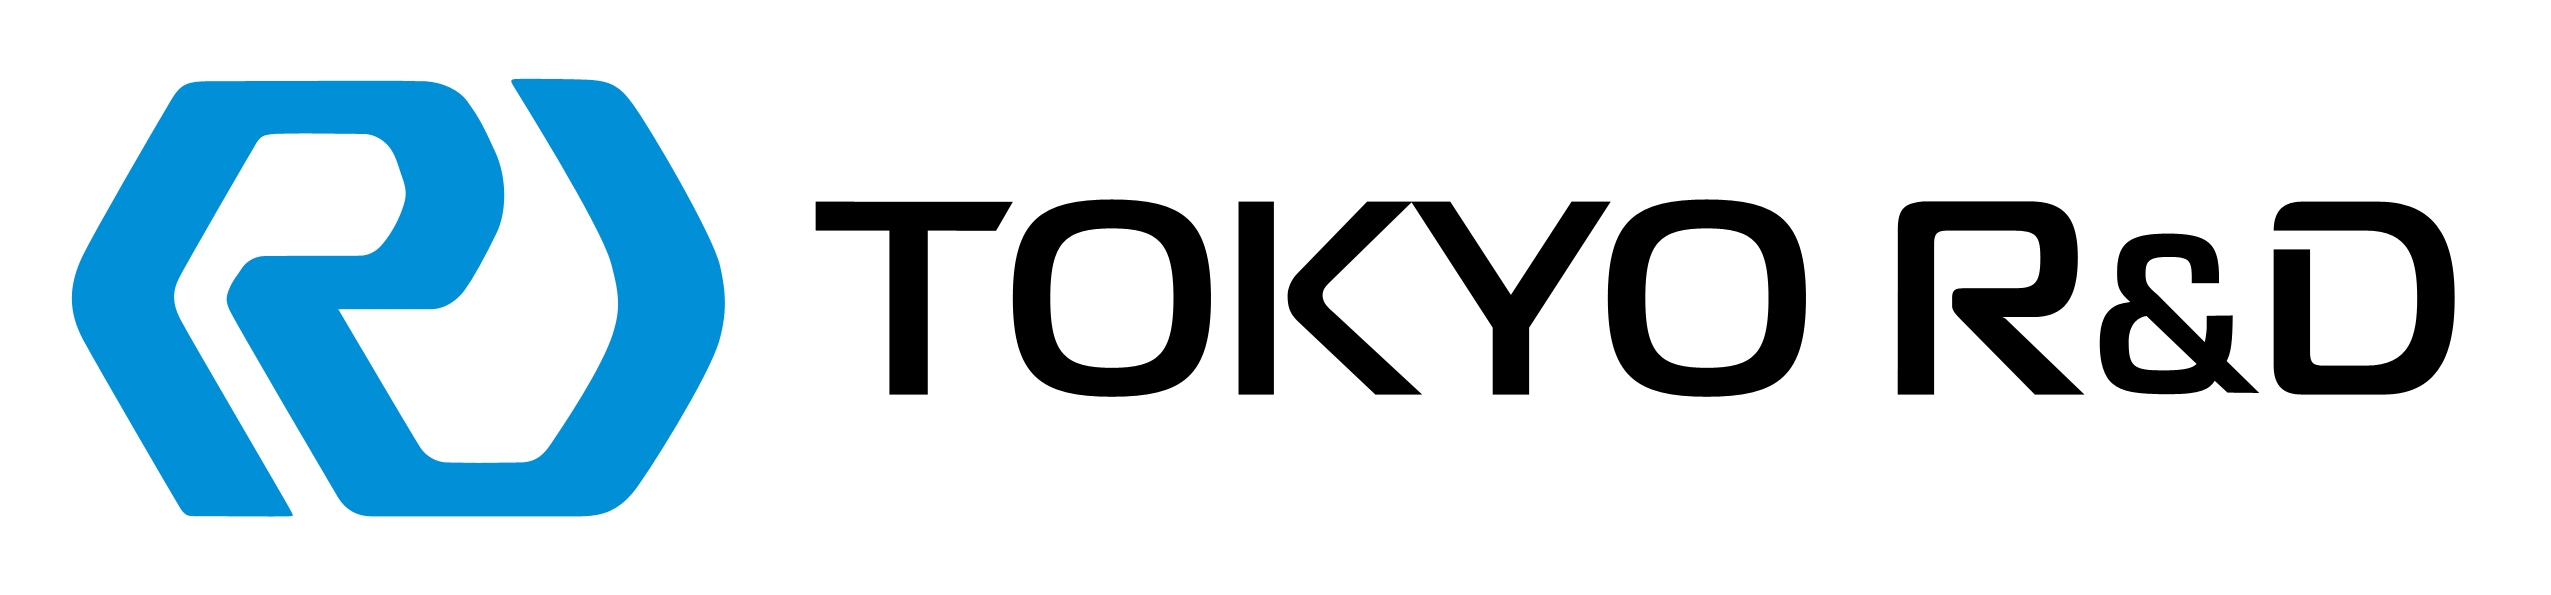 新TOKYO R&D CIロゴマーク_210908 210×900.jpg